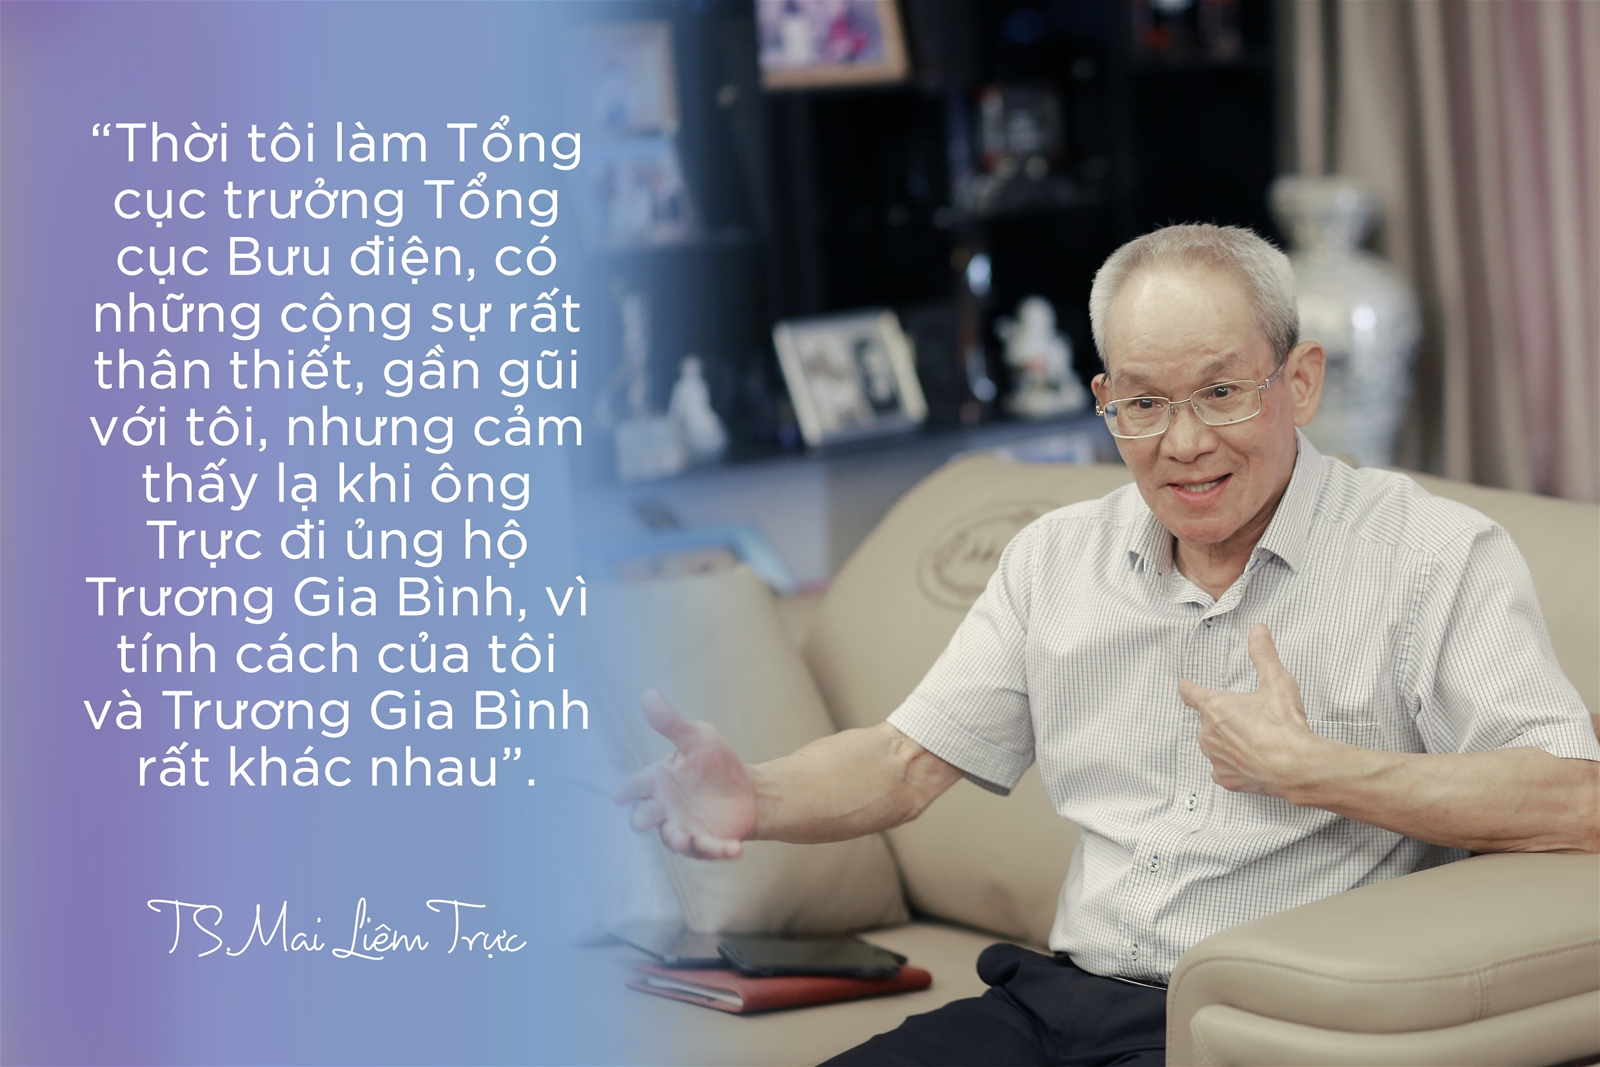 Trương Gia Bình trong mắt người mở đường đưa Internet vào Việt Nam- Ảnh 14.